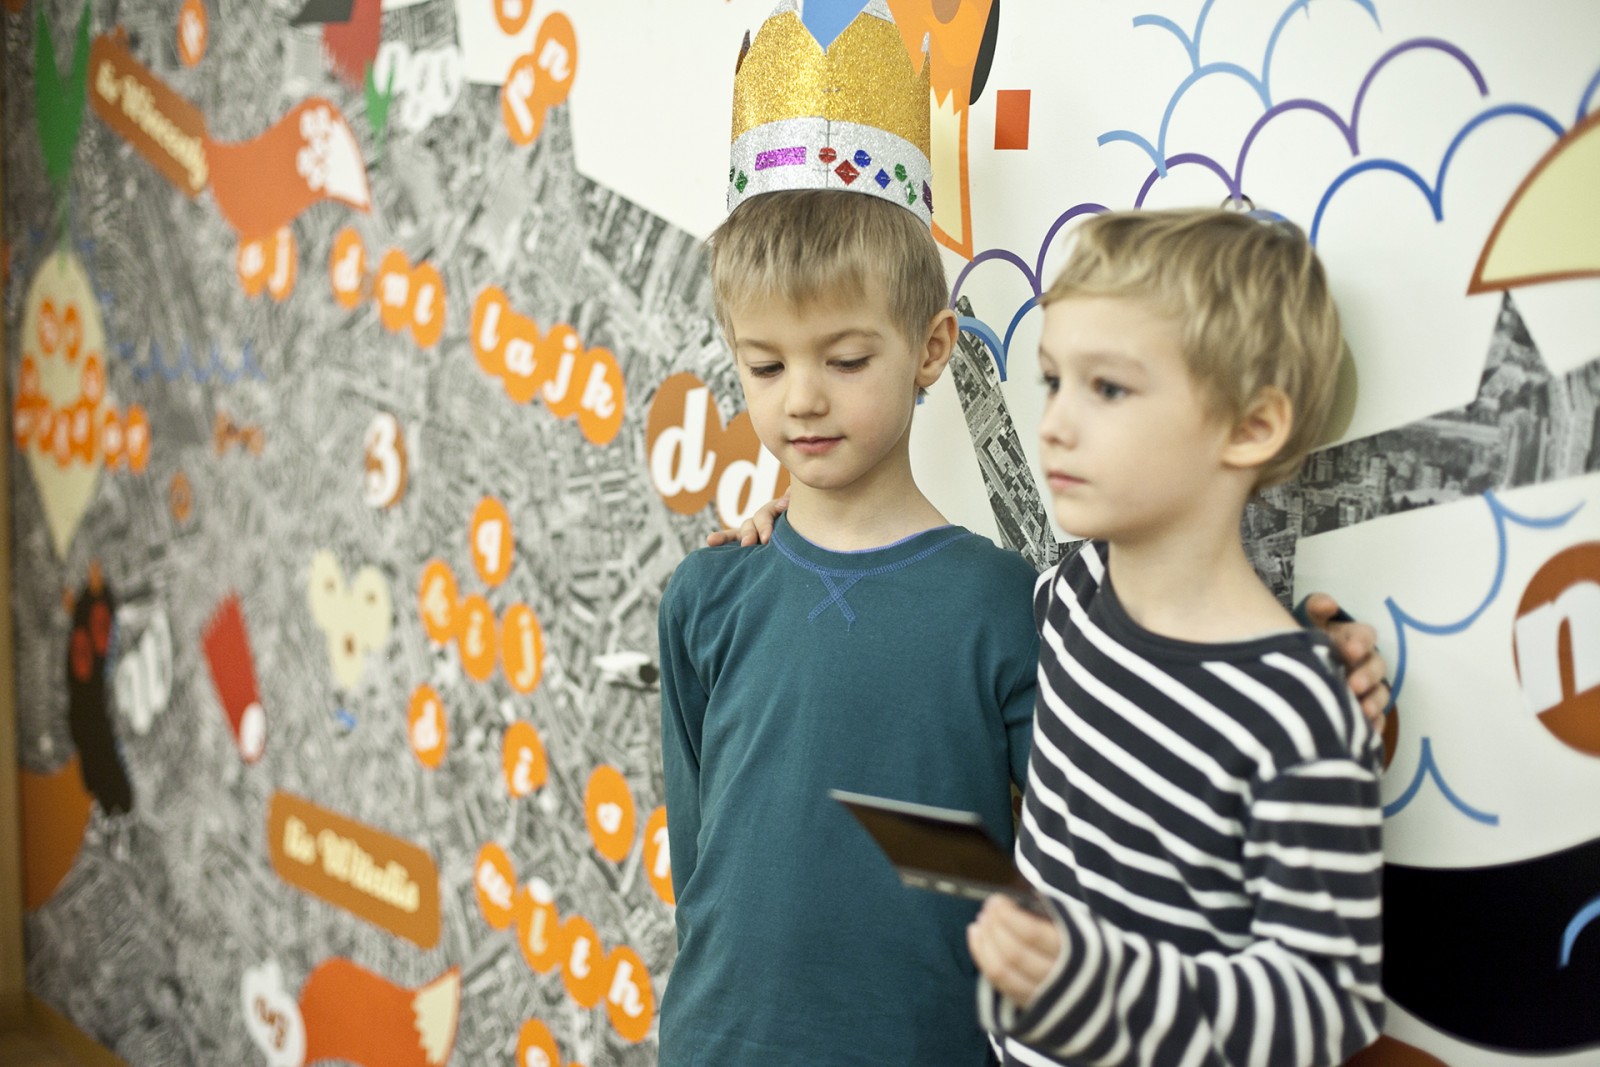 Dwóch chłopców  - po prawej stronie zdjęcia - stoi obok siebie, opierają się plecami o ścianę. Rozmawiają. Chłopiec po lewej ma na głowie kolorowa koronę.